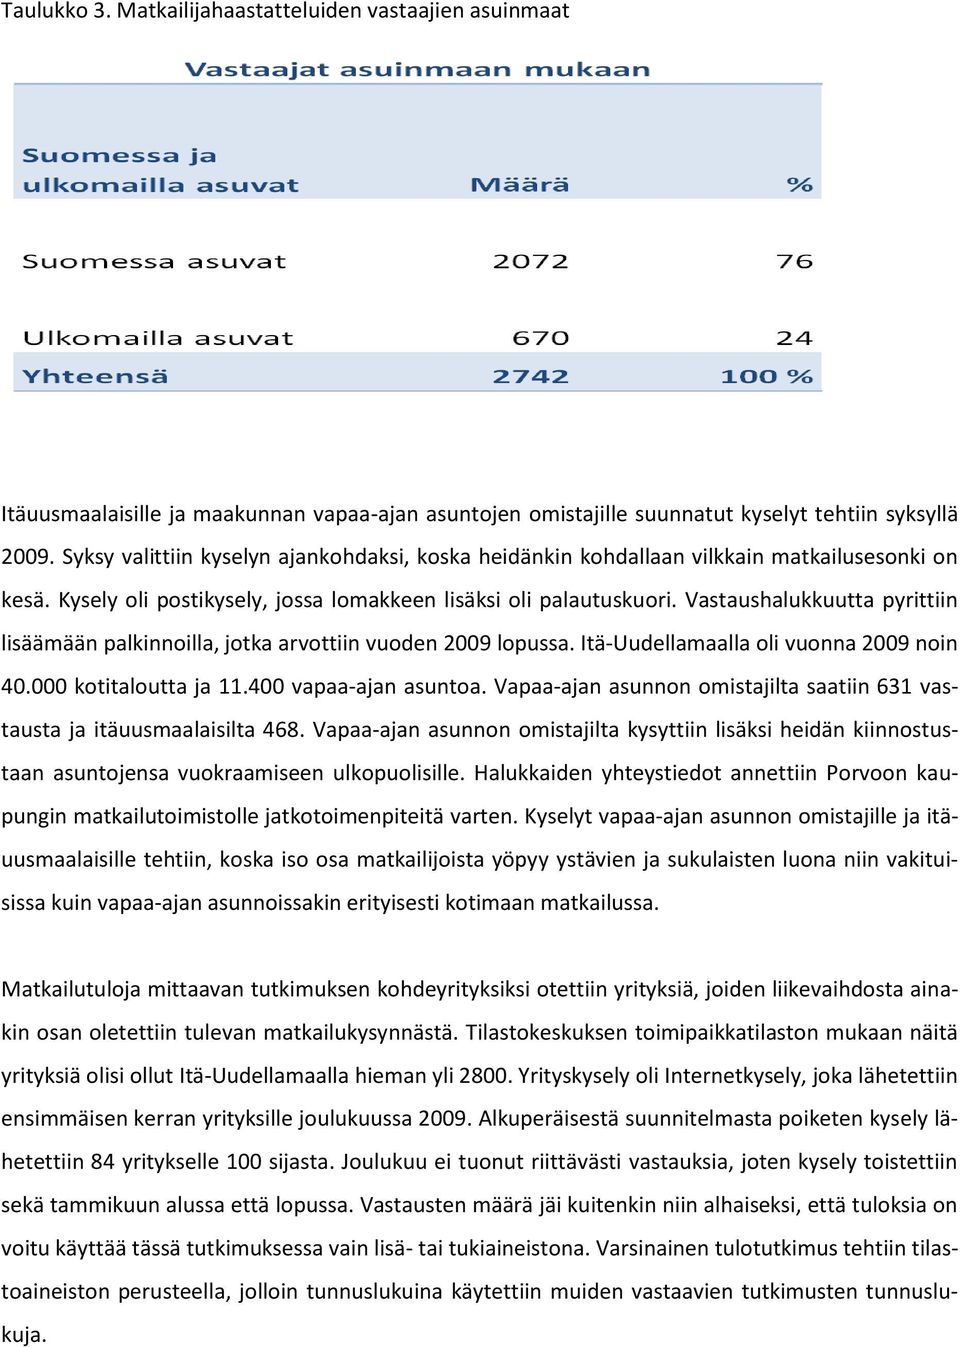 Vastaushalukkuutta pyrittiin lisäämään palkinnoilla, jotka arvottiin vuoden 2009 lopussa. Itä-Uudellamaalla oli vuonna 2009 noin 40.000 kotitaloutta ja 11.400 vapaa-ajan asuntoa.